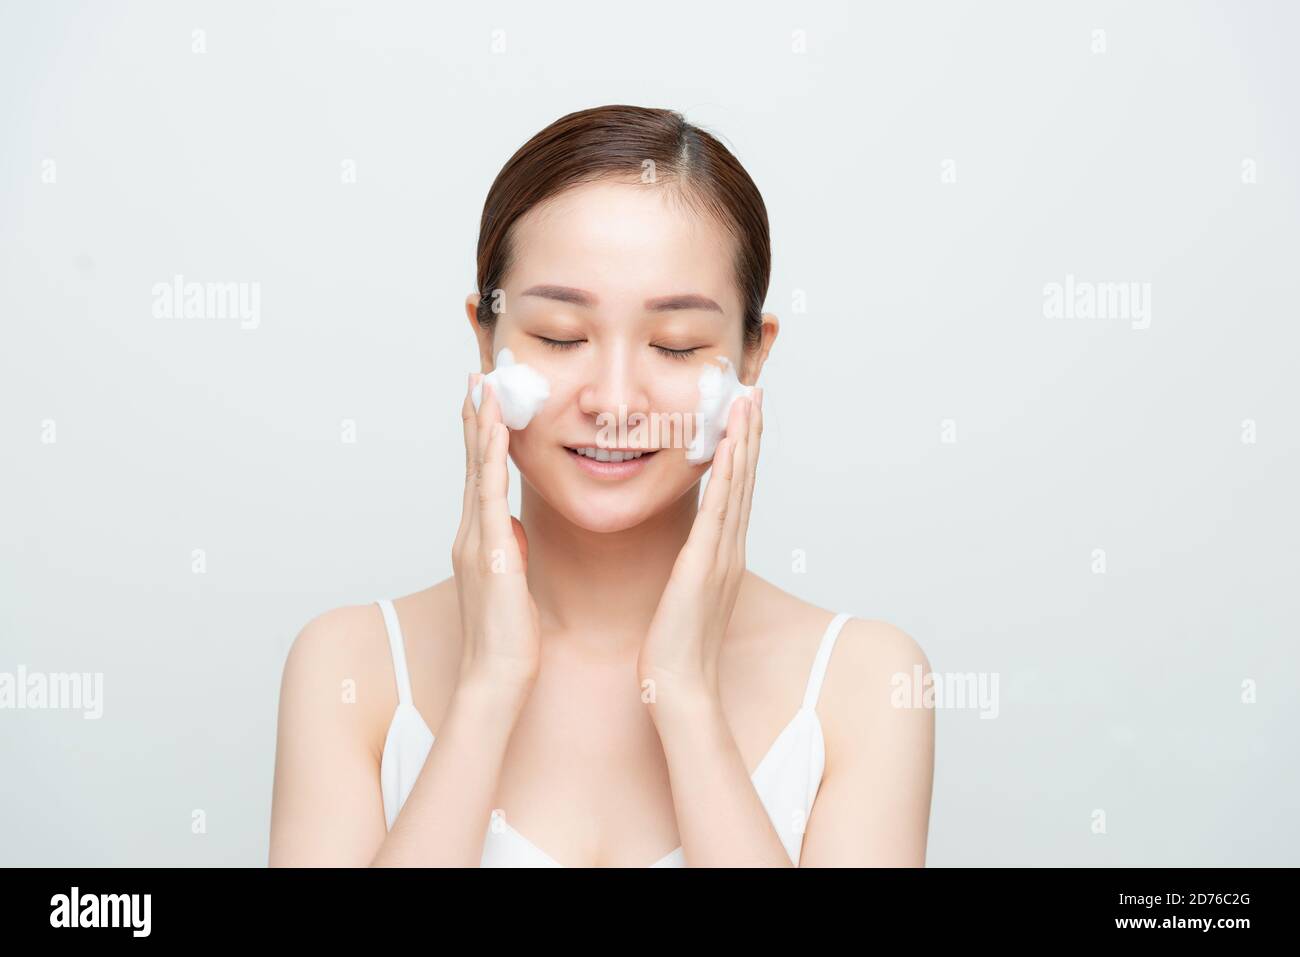 Portrait de la femme joyeuse qui rit en appliquant de la mousse pour se laver sur son visage. Banque D'Images